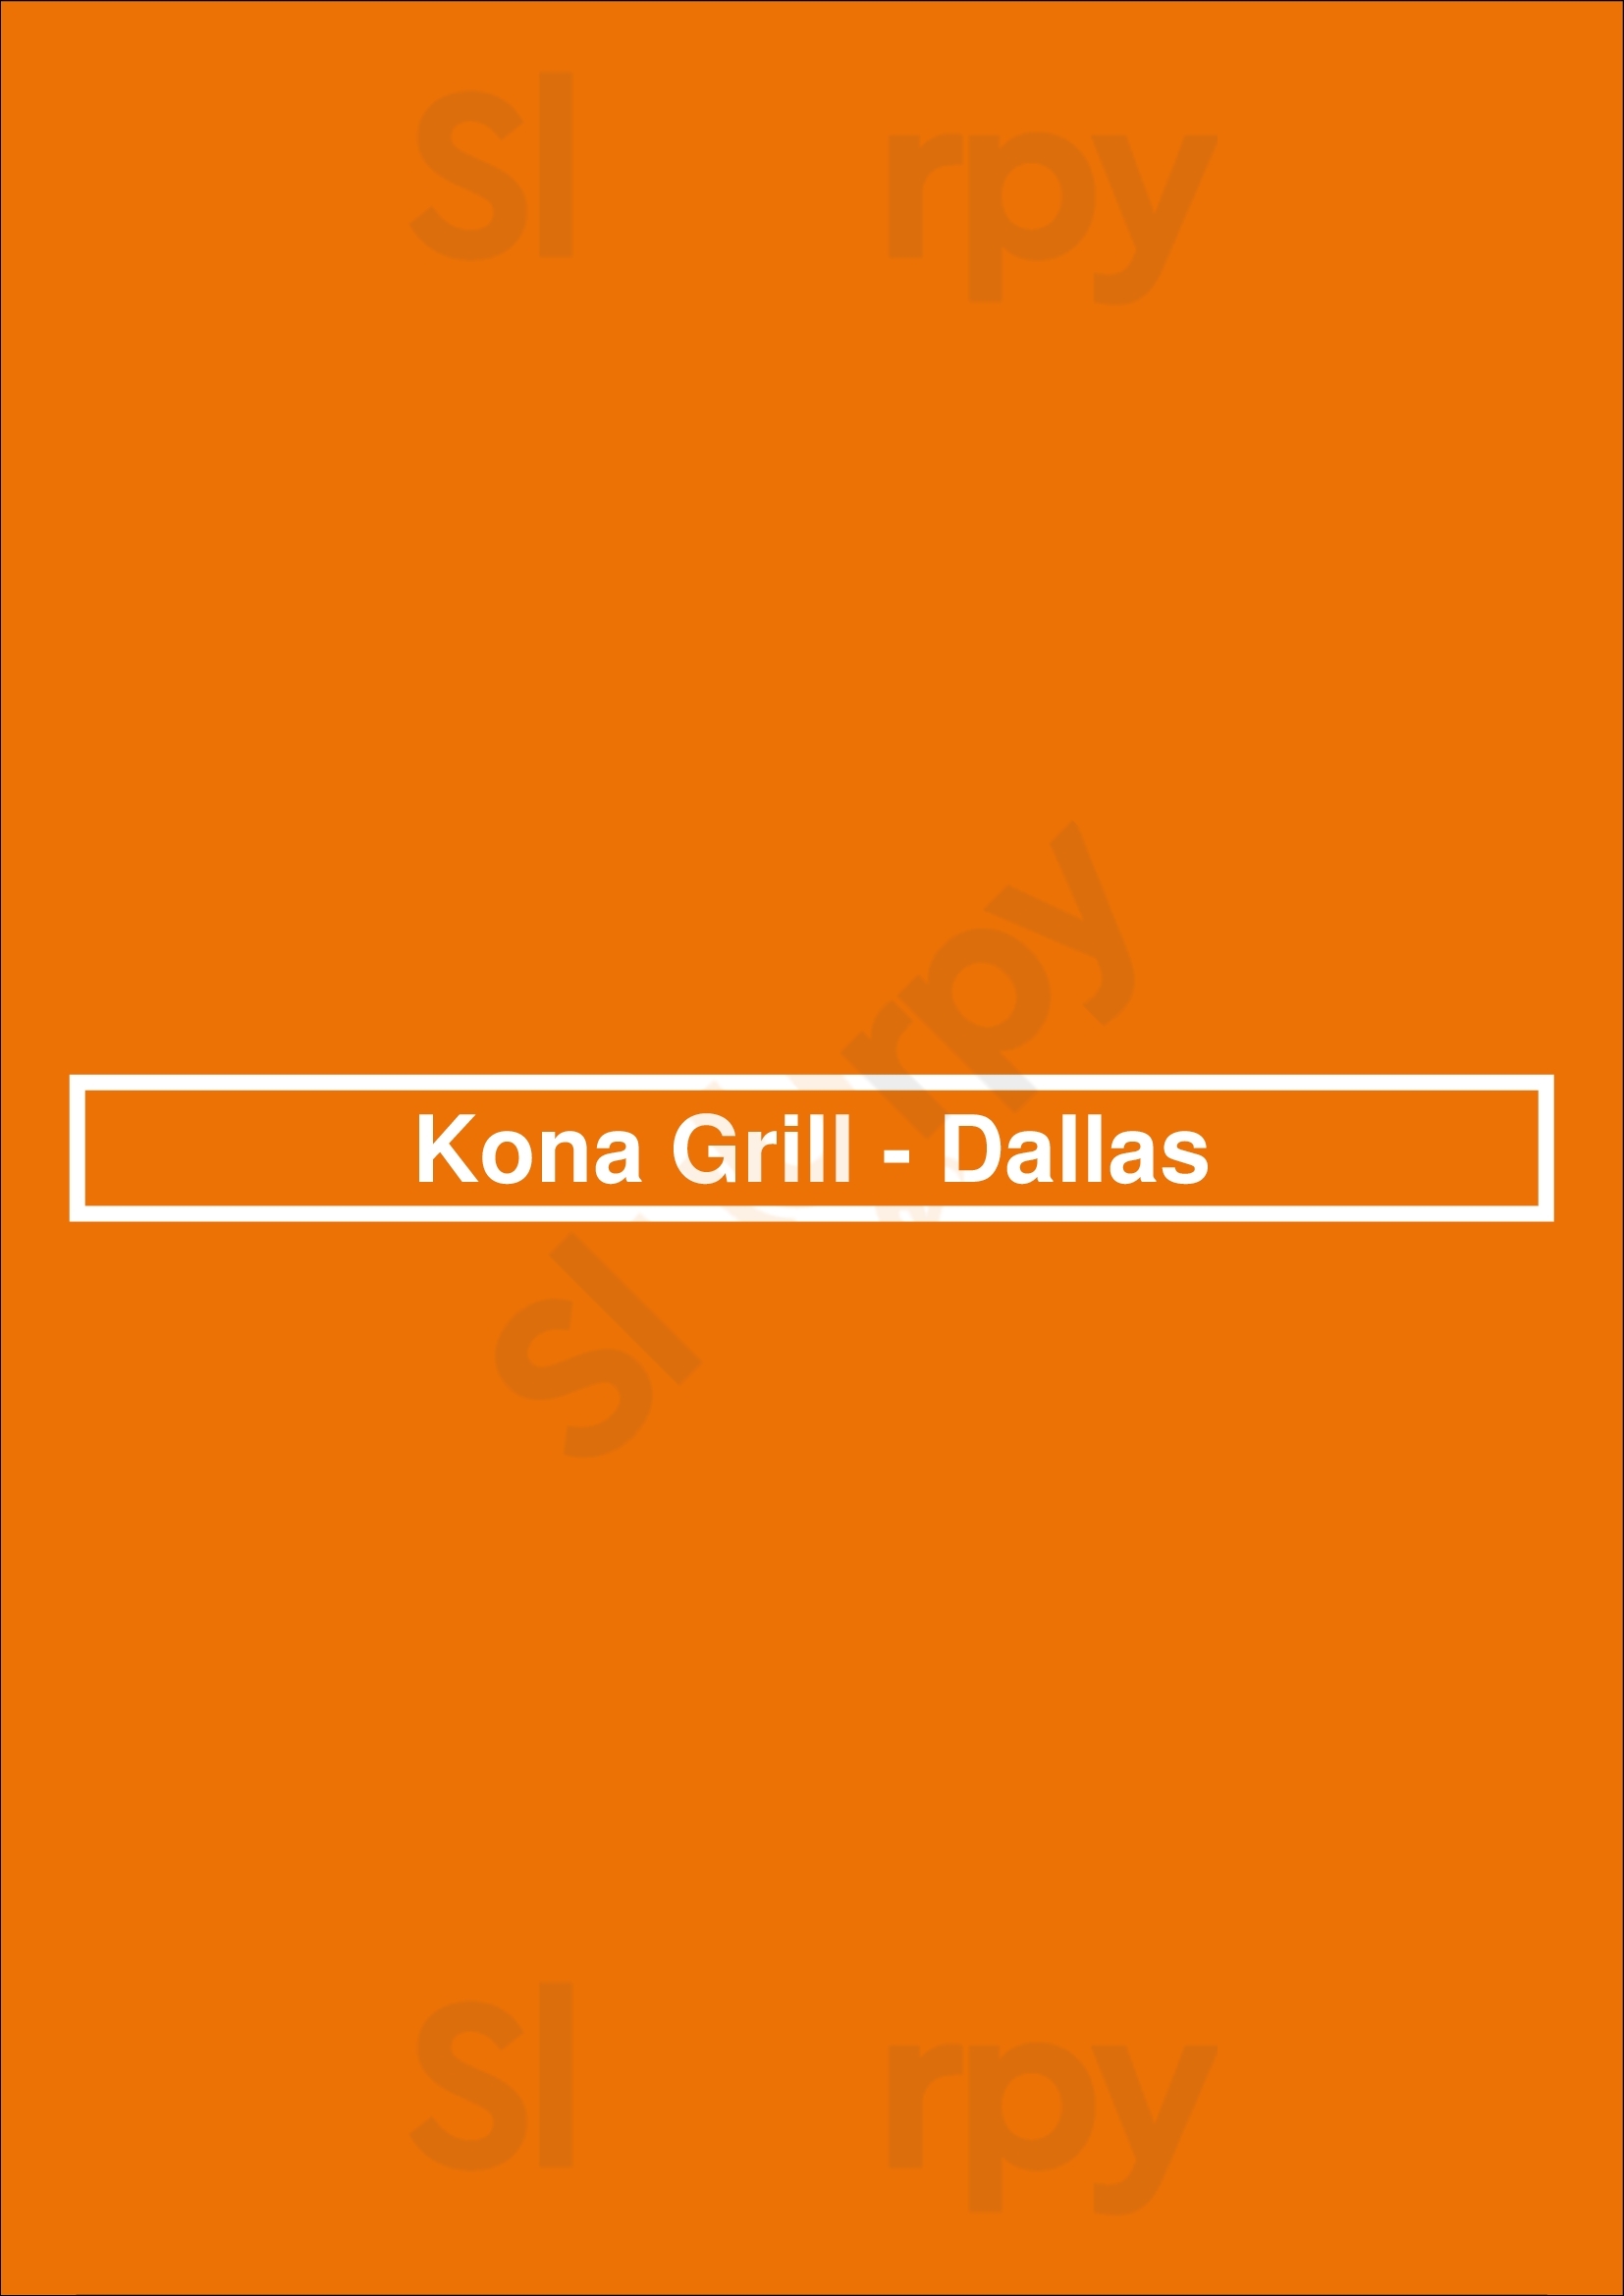 Kona Grill Dallas Menu - 1